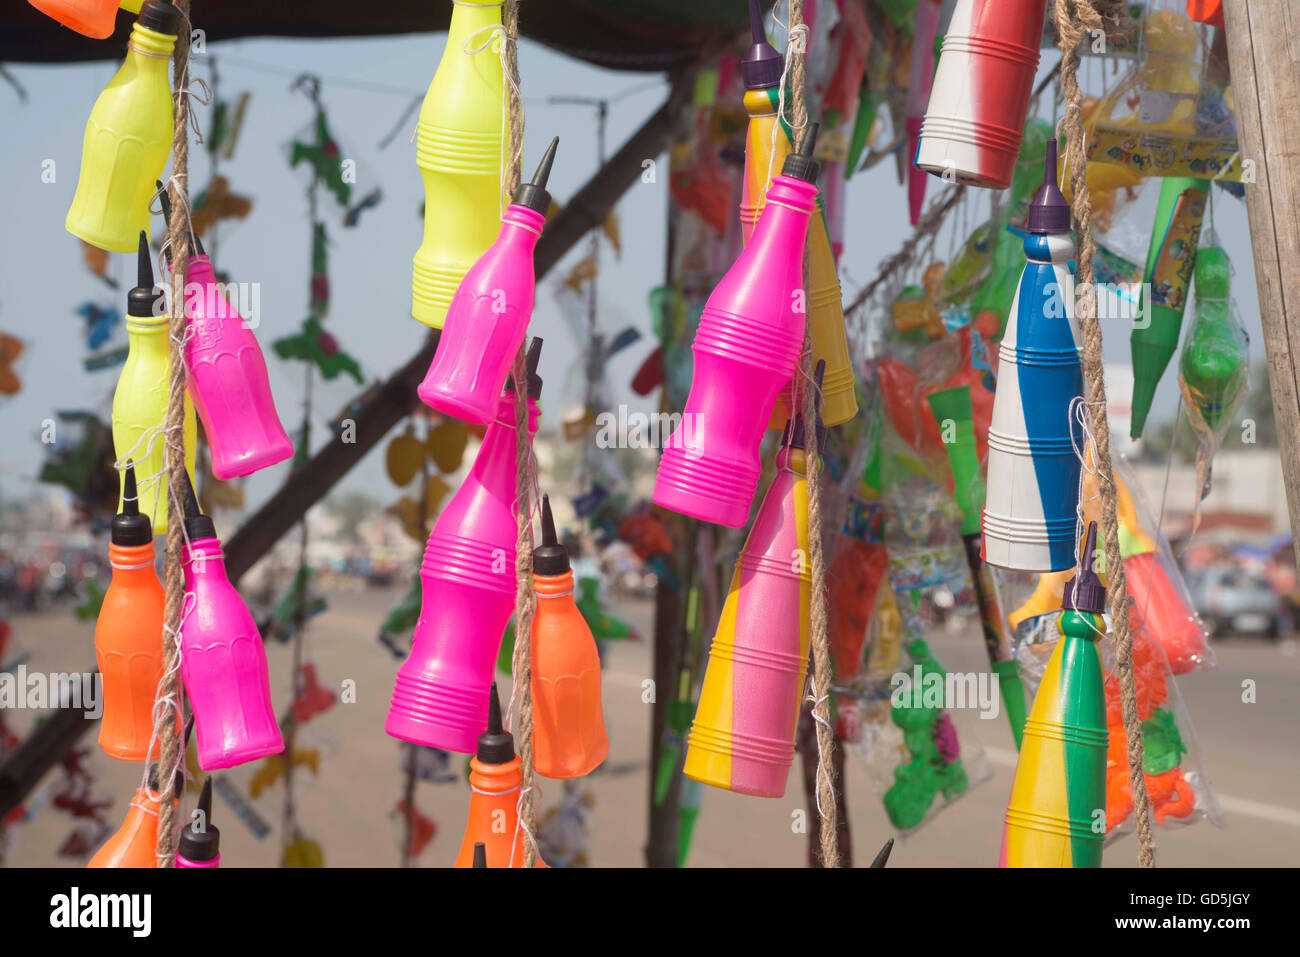 Plastic bottle pichkari hanging outside stall, puri, orissa, india, asia Stock Photo